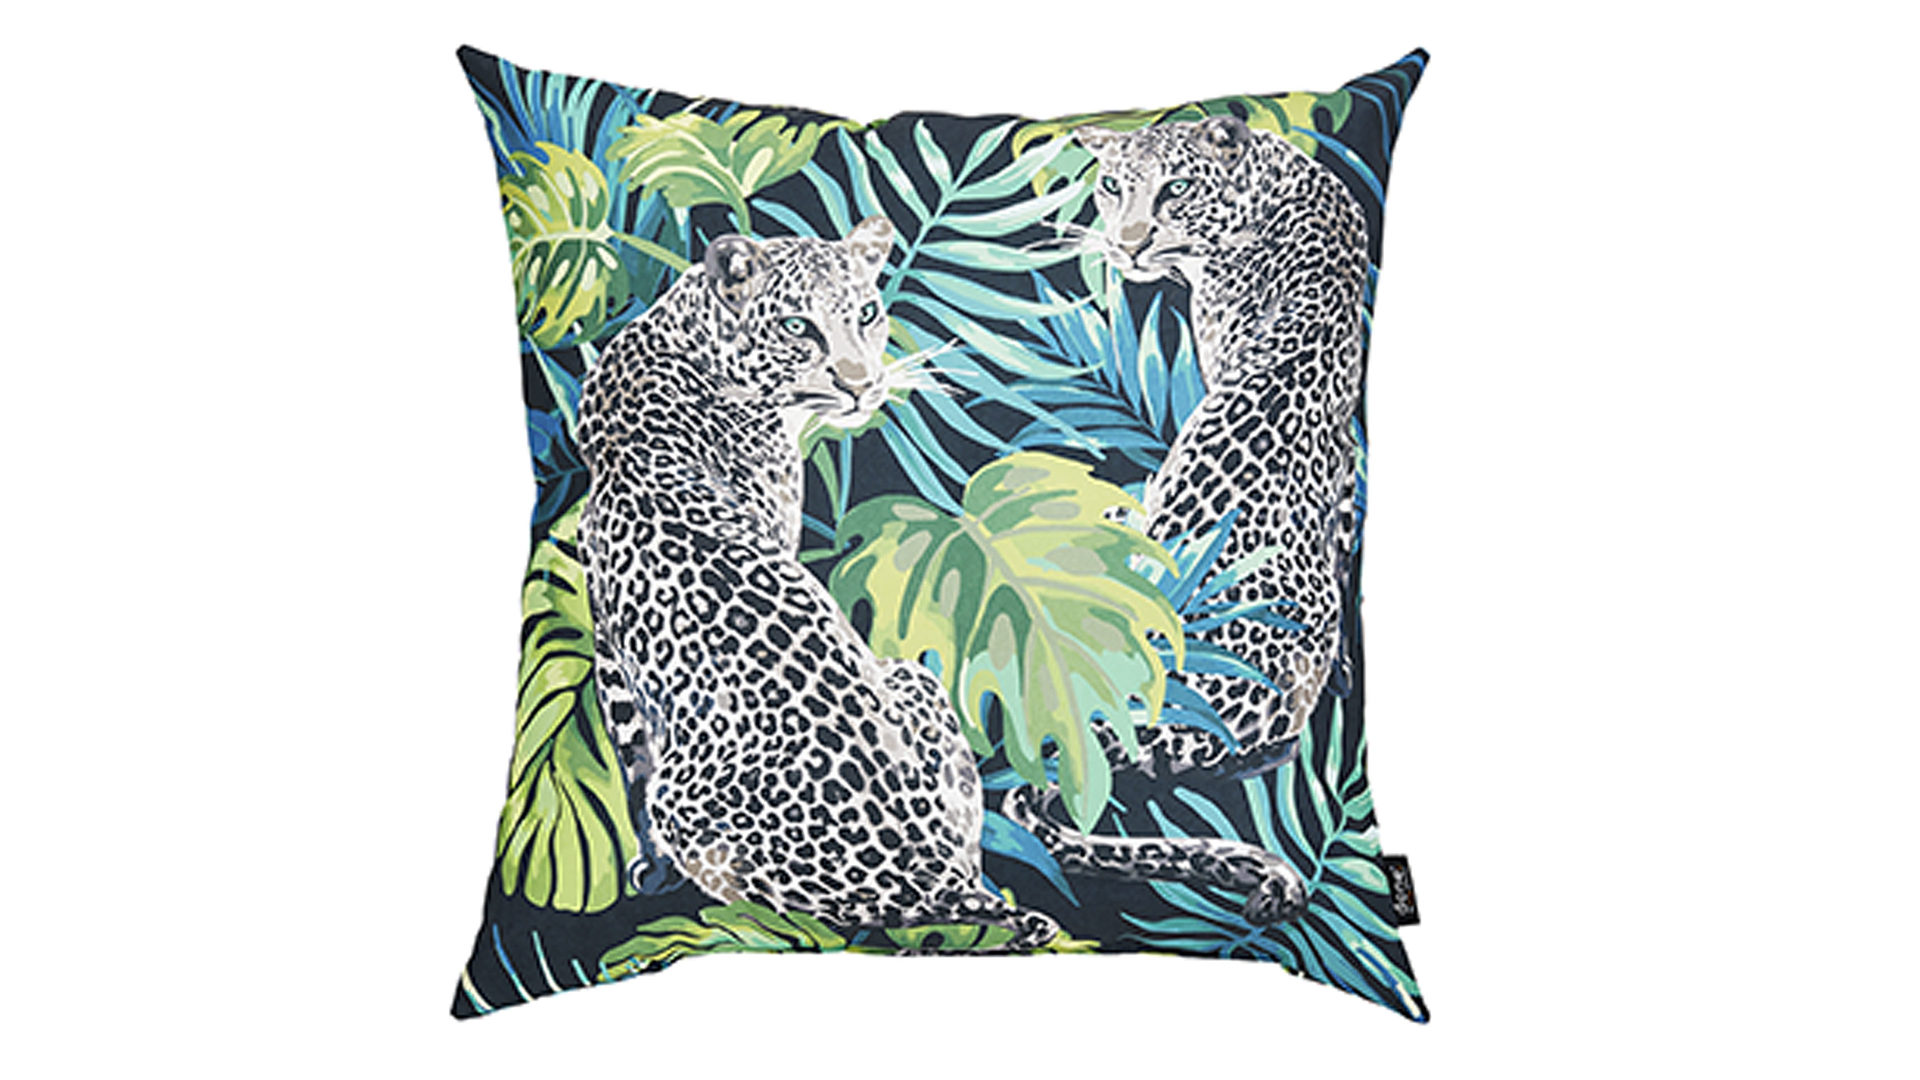 Einzelkissen Done.® aus Kunstfaser in Schwarz done.® Kissen Cushion Outside Leopard Dessin Leopard – ca. 65 x 65 cm